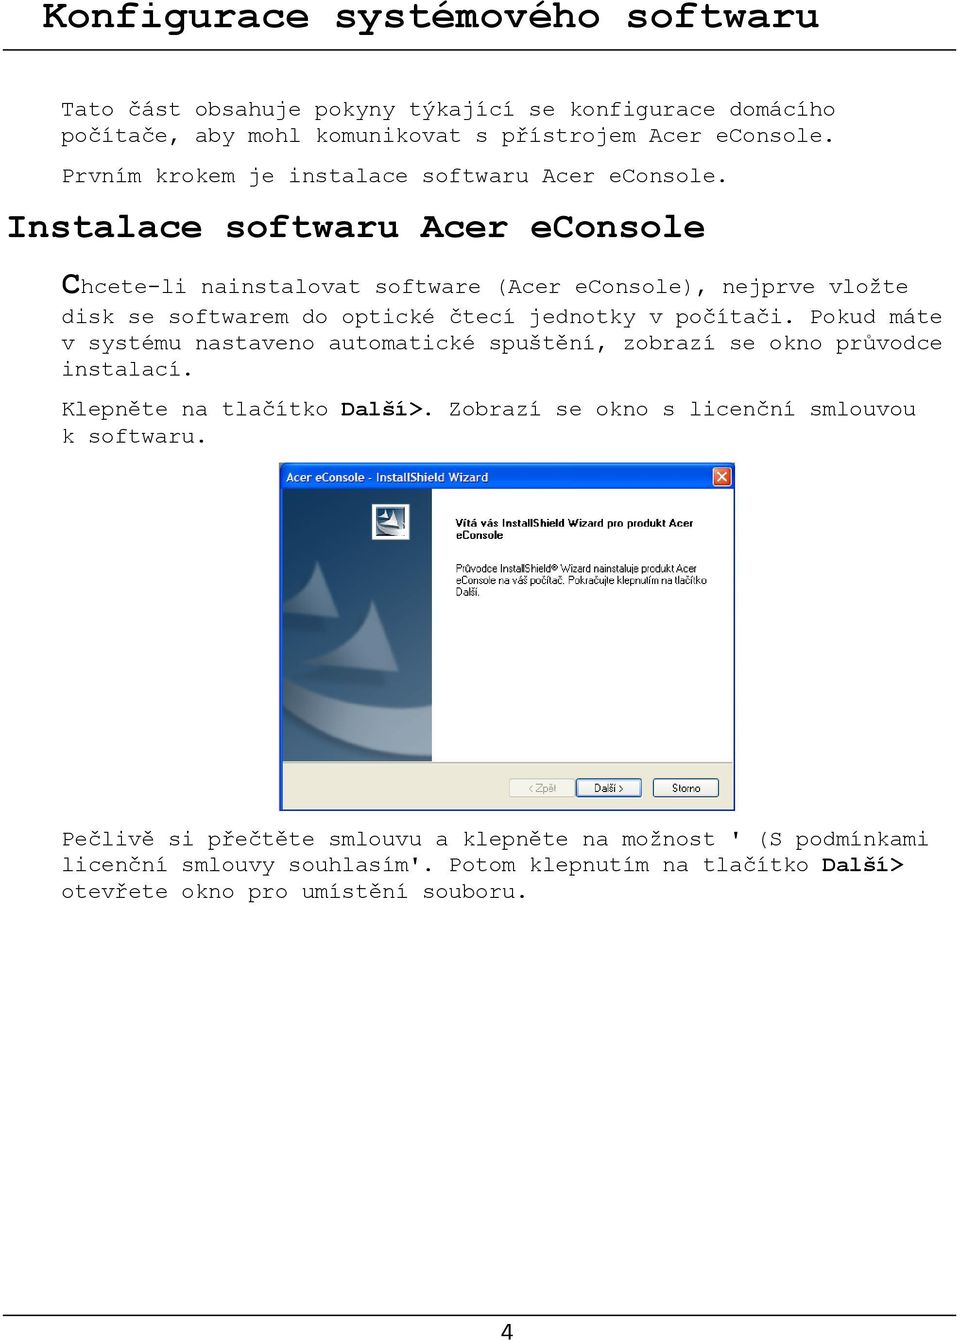 Instalace softwaru Acer econsole Chcete-li nainstalovat software (Acer econsole), nejprve vložte disk se softwarem do optické čtecí jednotky v počítači.